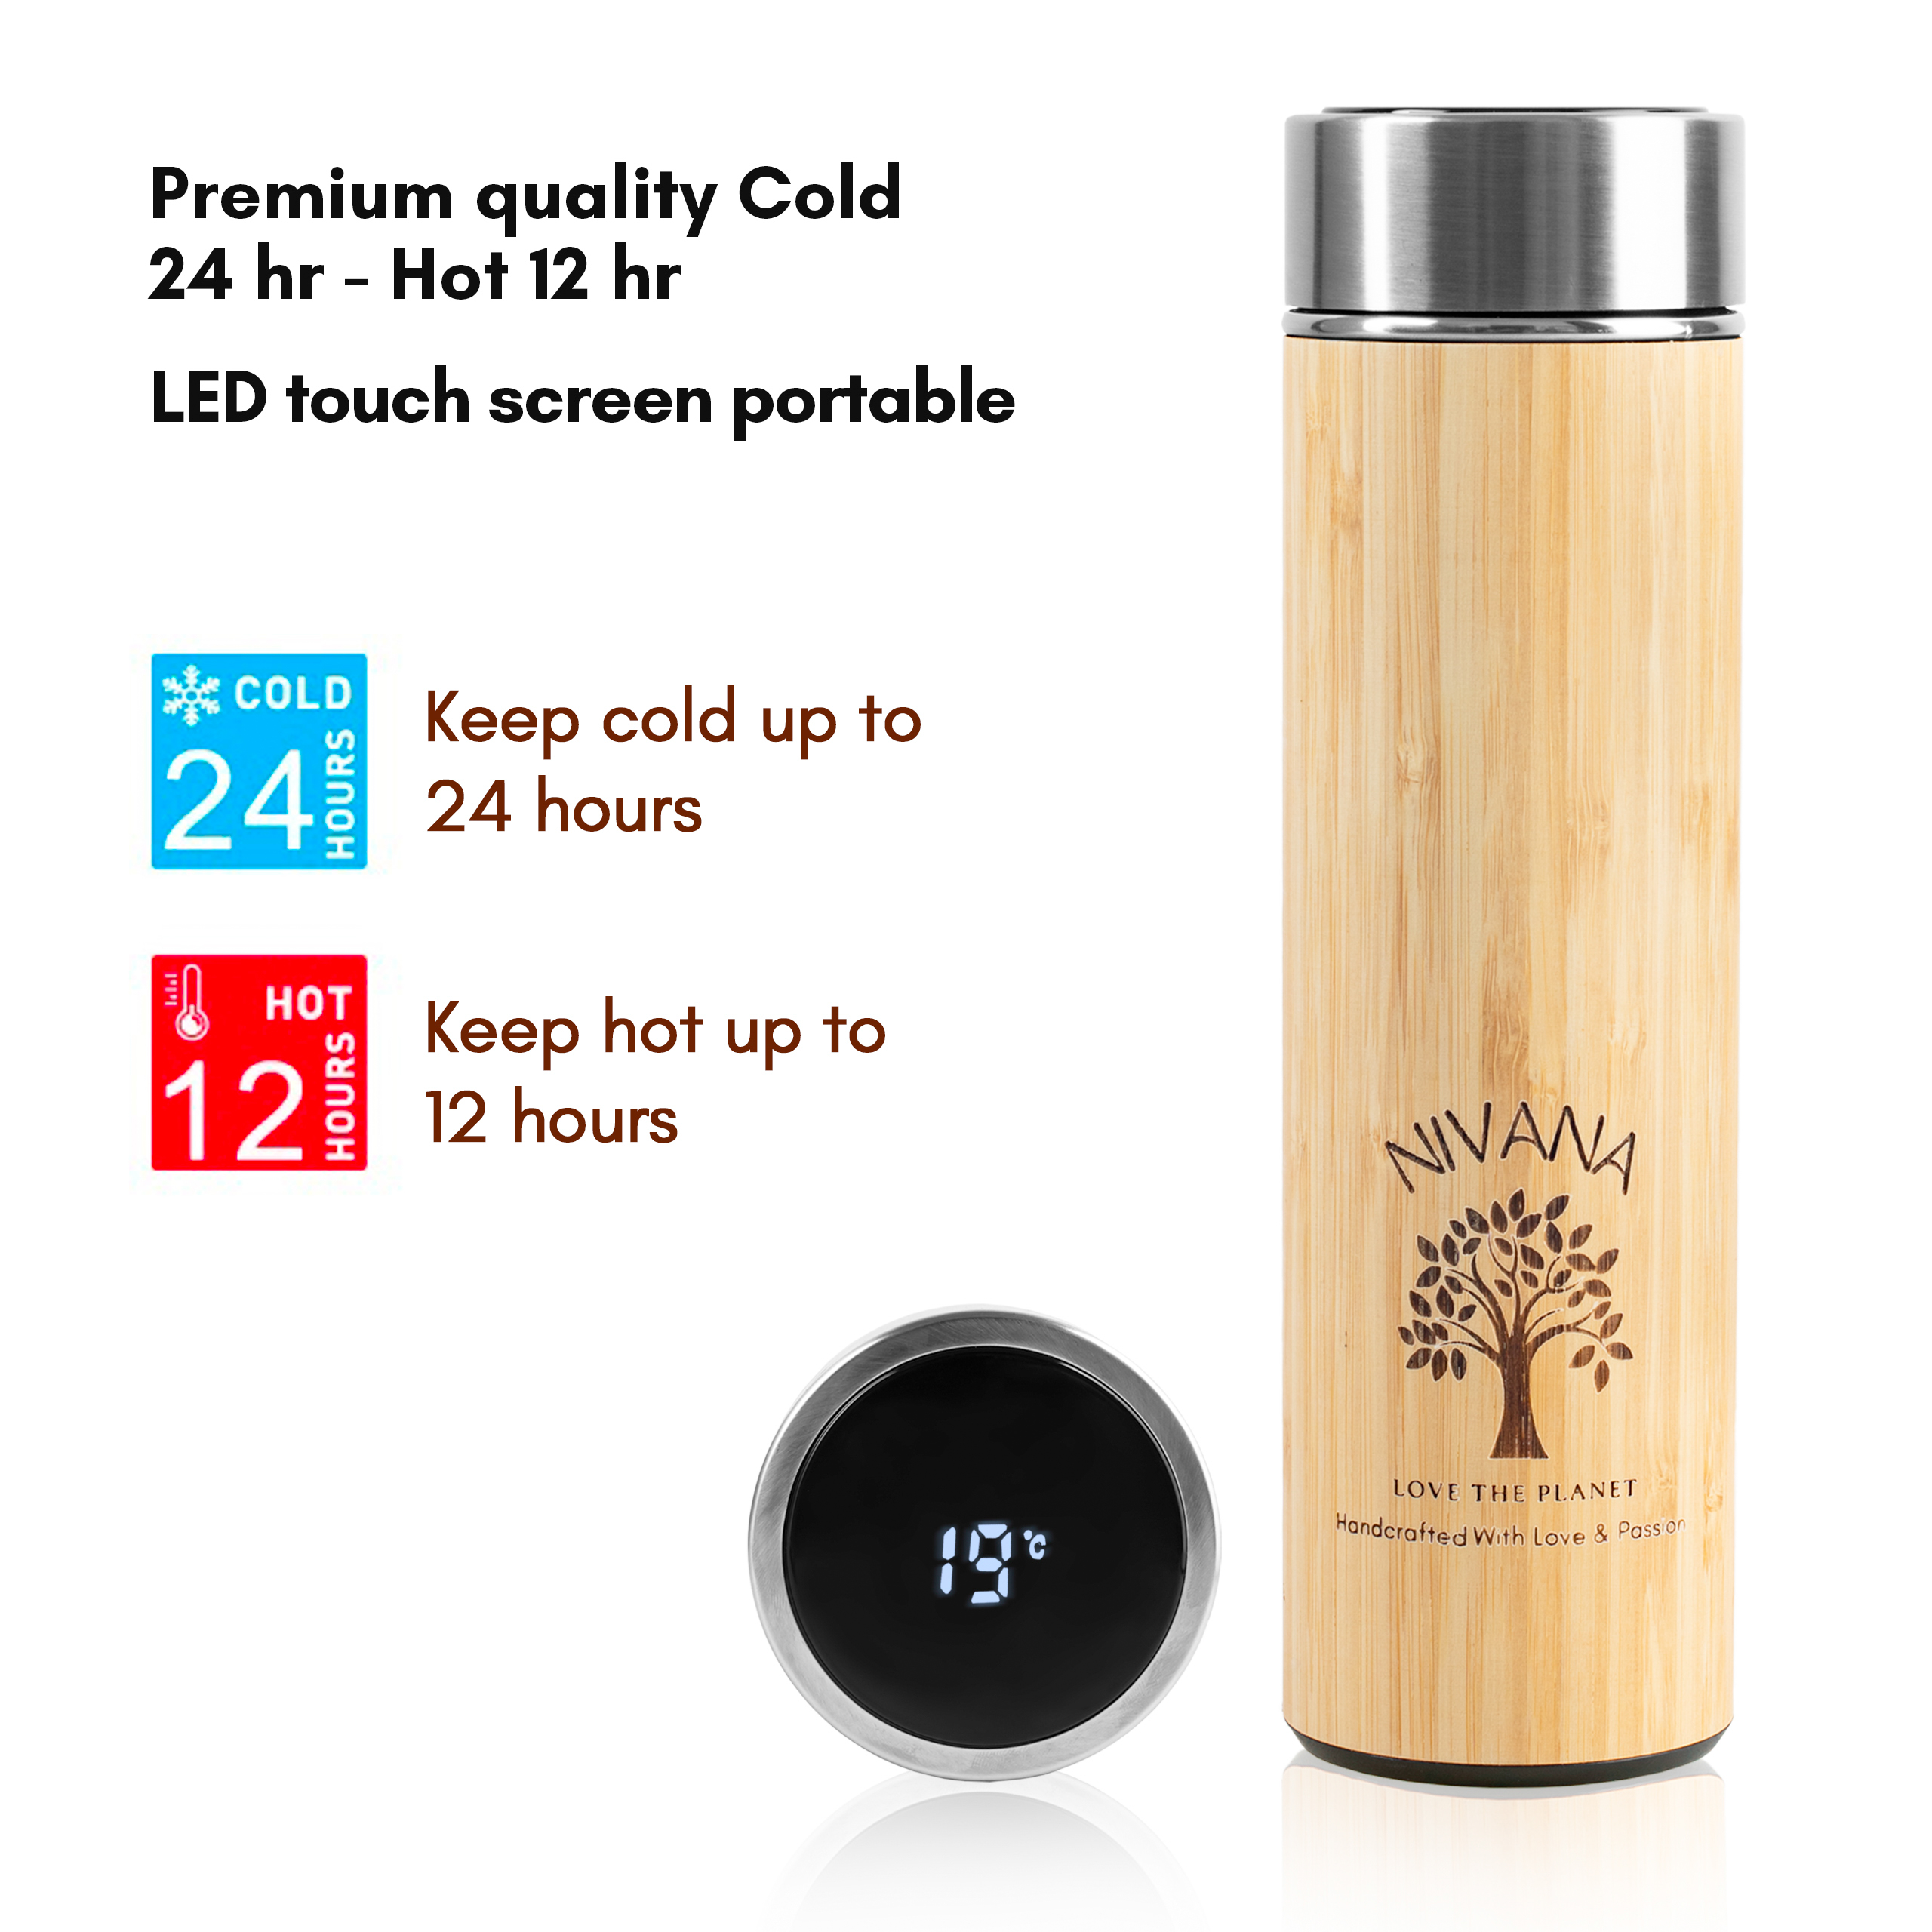 Bình giữ nhiệt tre 500ml - Nắp LCD cảm ứng hiển thị nhiệt độ - Túi lọc kép - Pha trà, cafe, nước trái cây